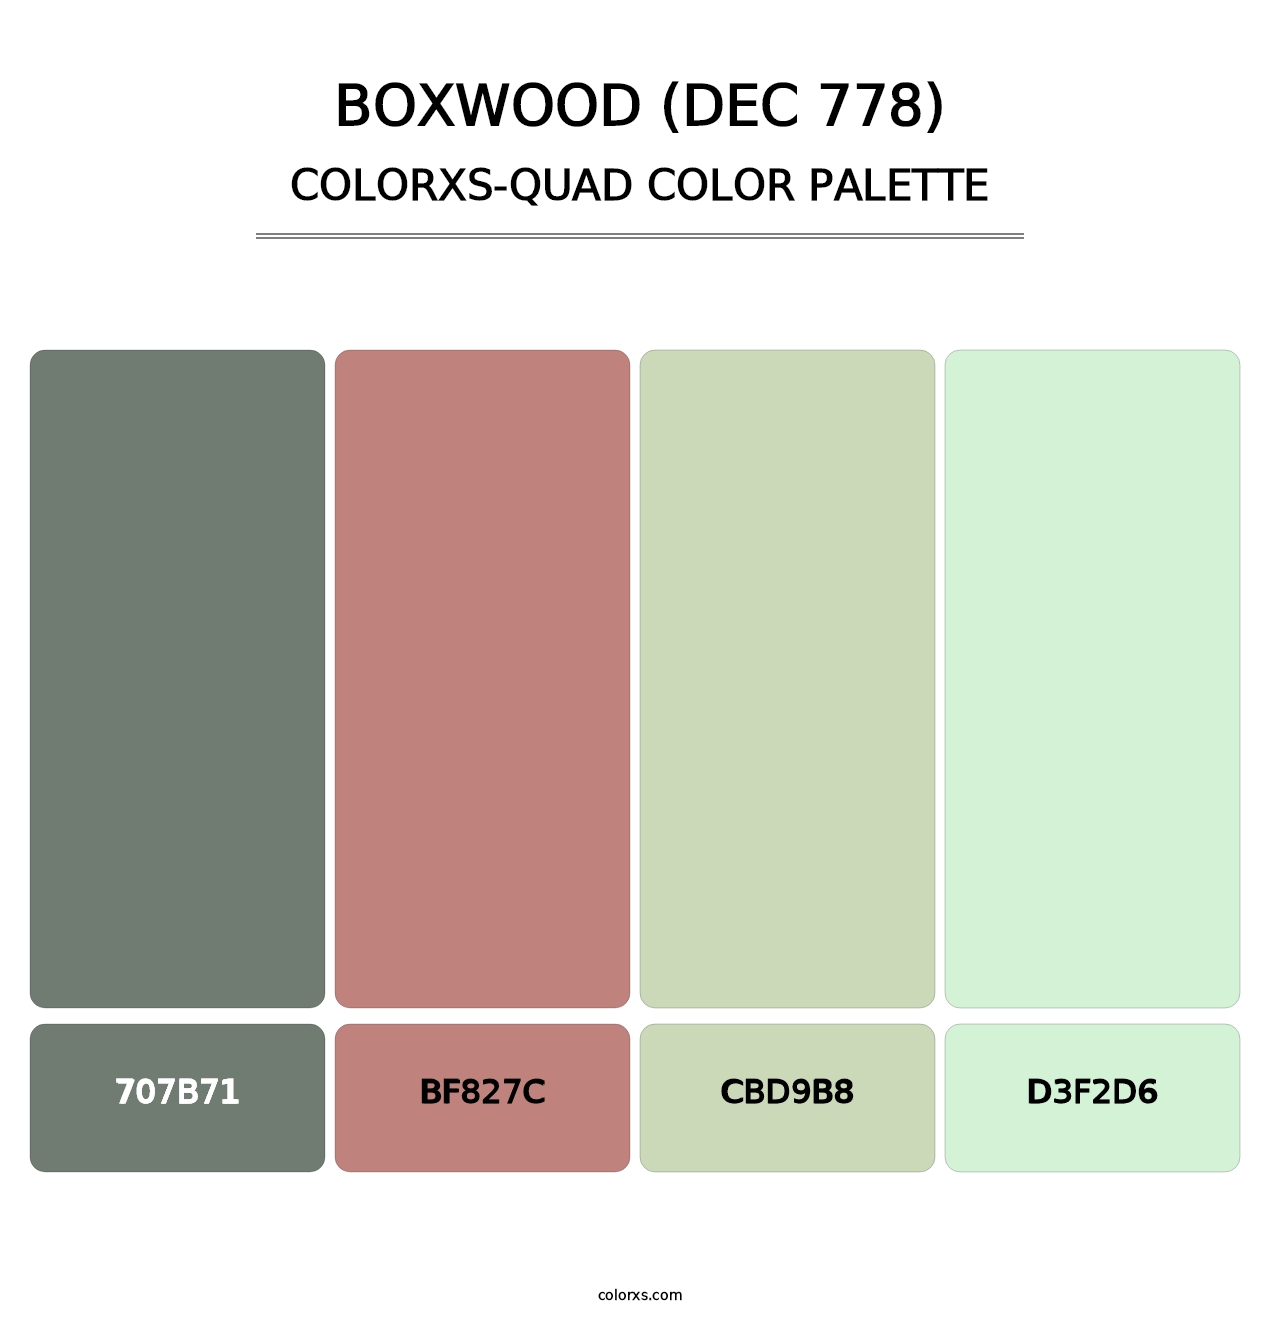 Boxwood (DEC 778) - Colorxs Quad Palette